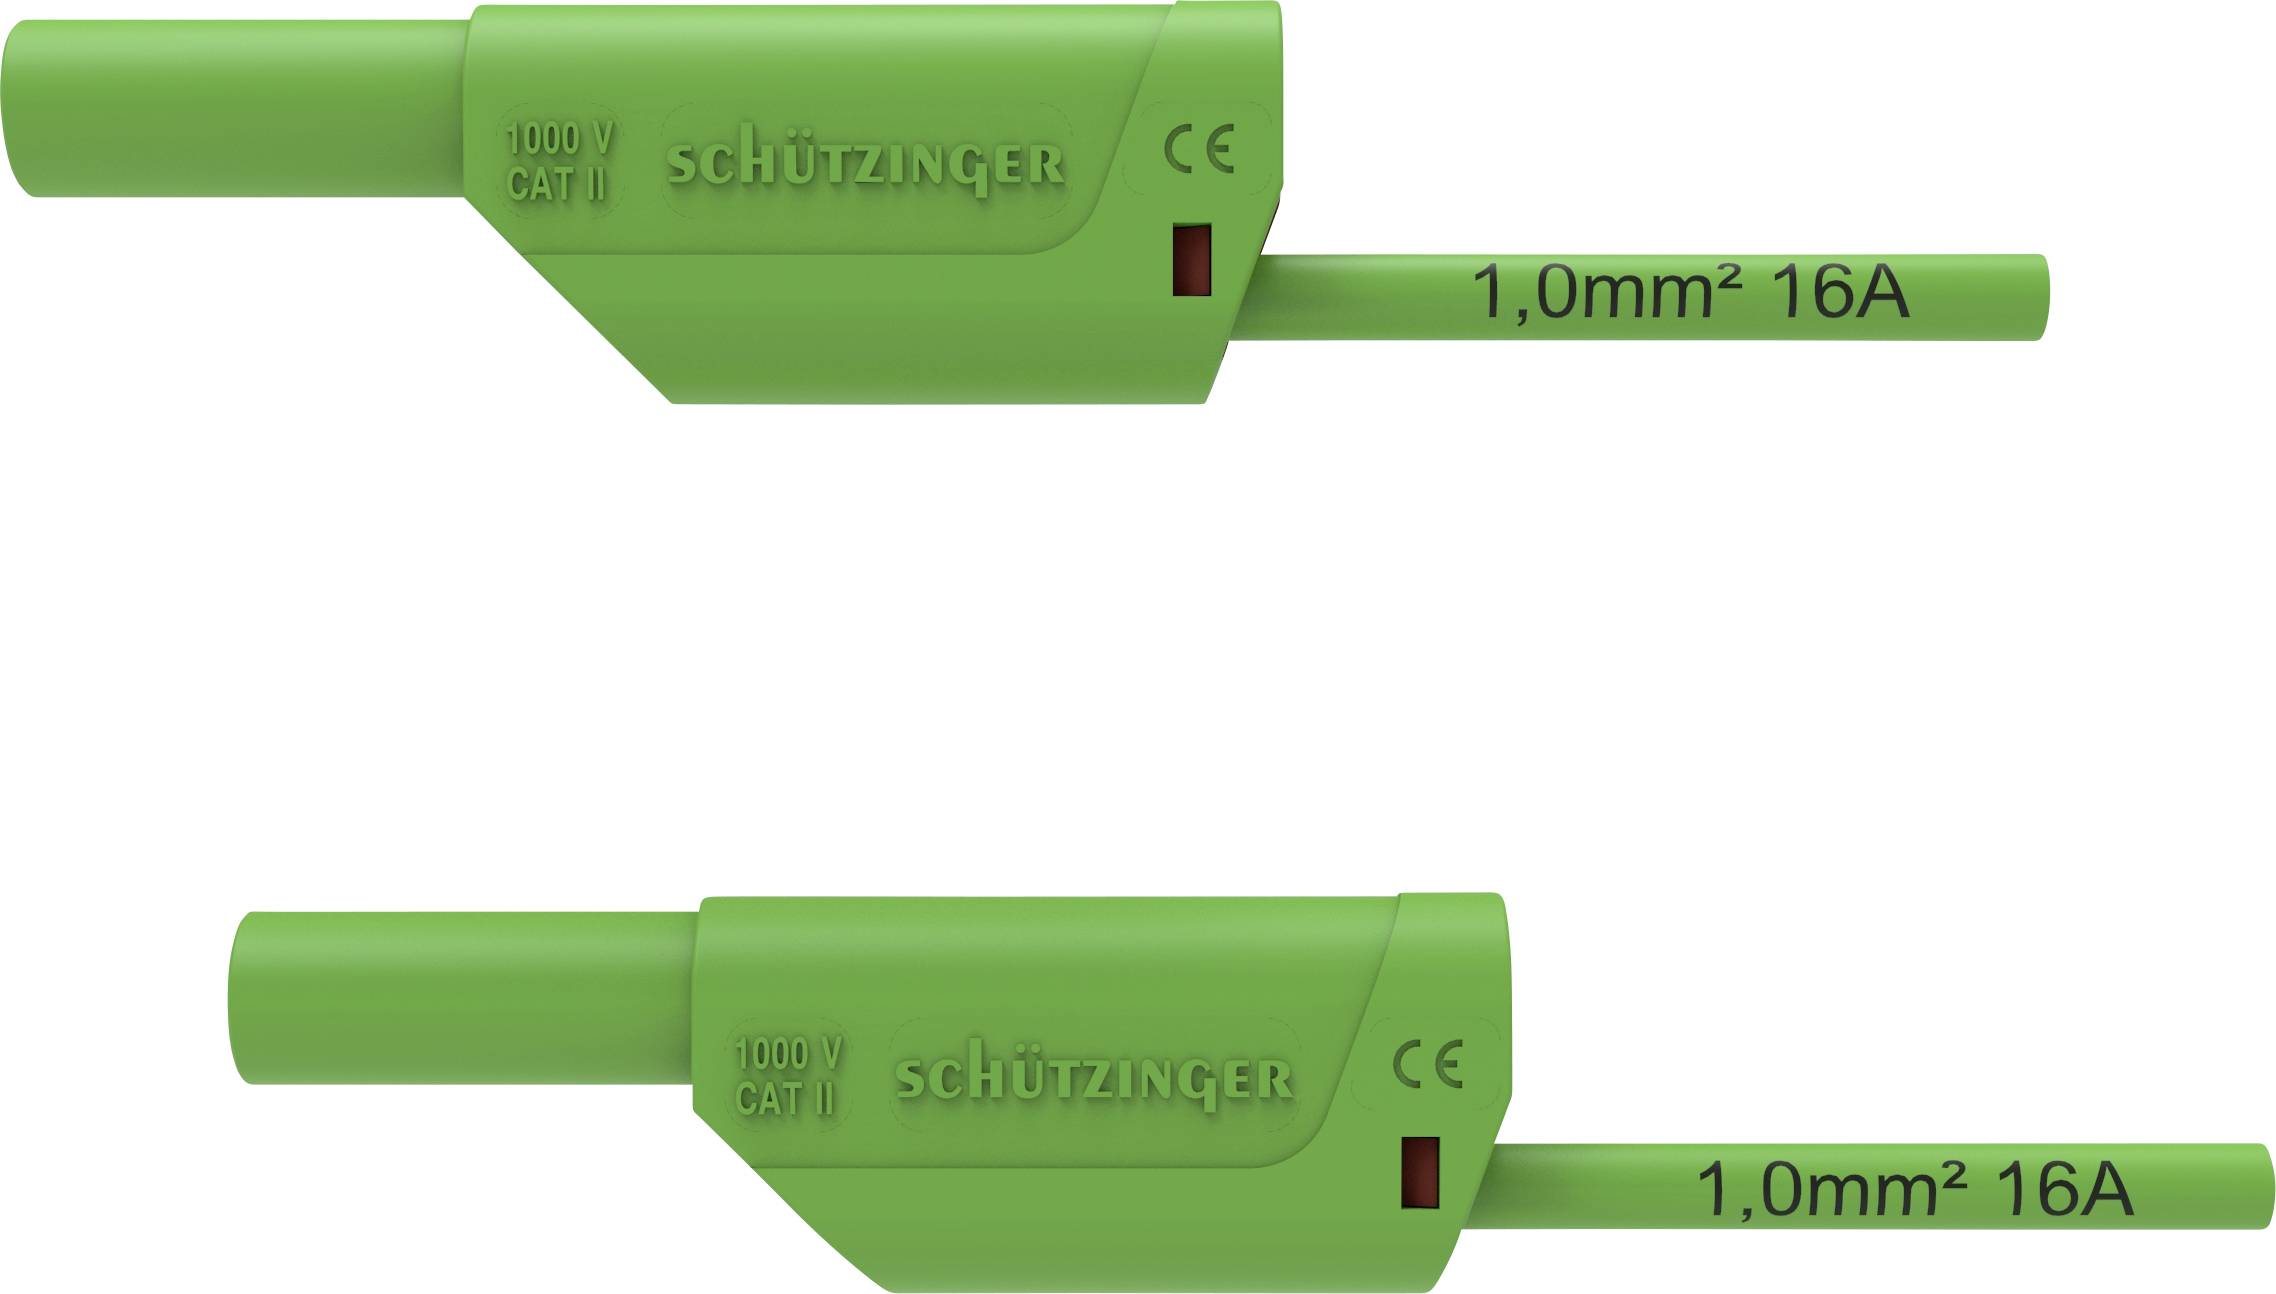 SCHÜTZINGER VSFK 8500 / 1 / 50 / GN Sicherheits-Messleitung [4 mm-Stecker - 4 mm-Stecker] 50.00